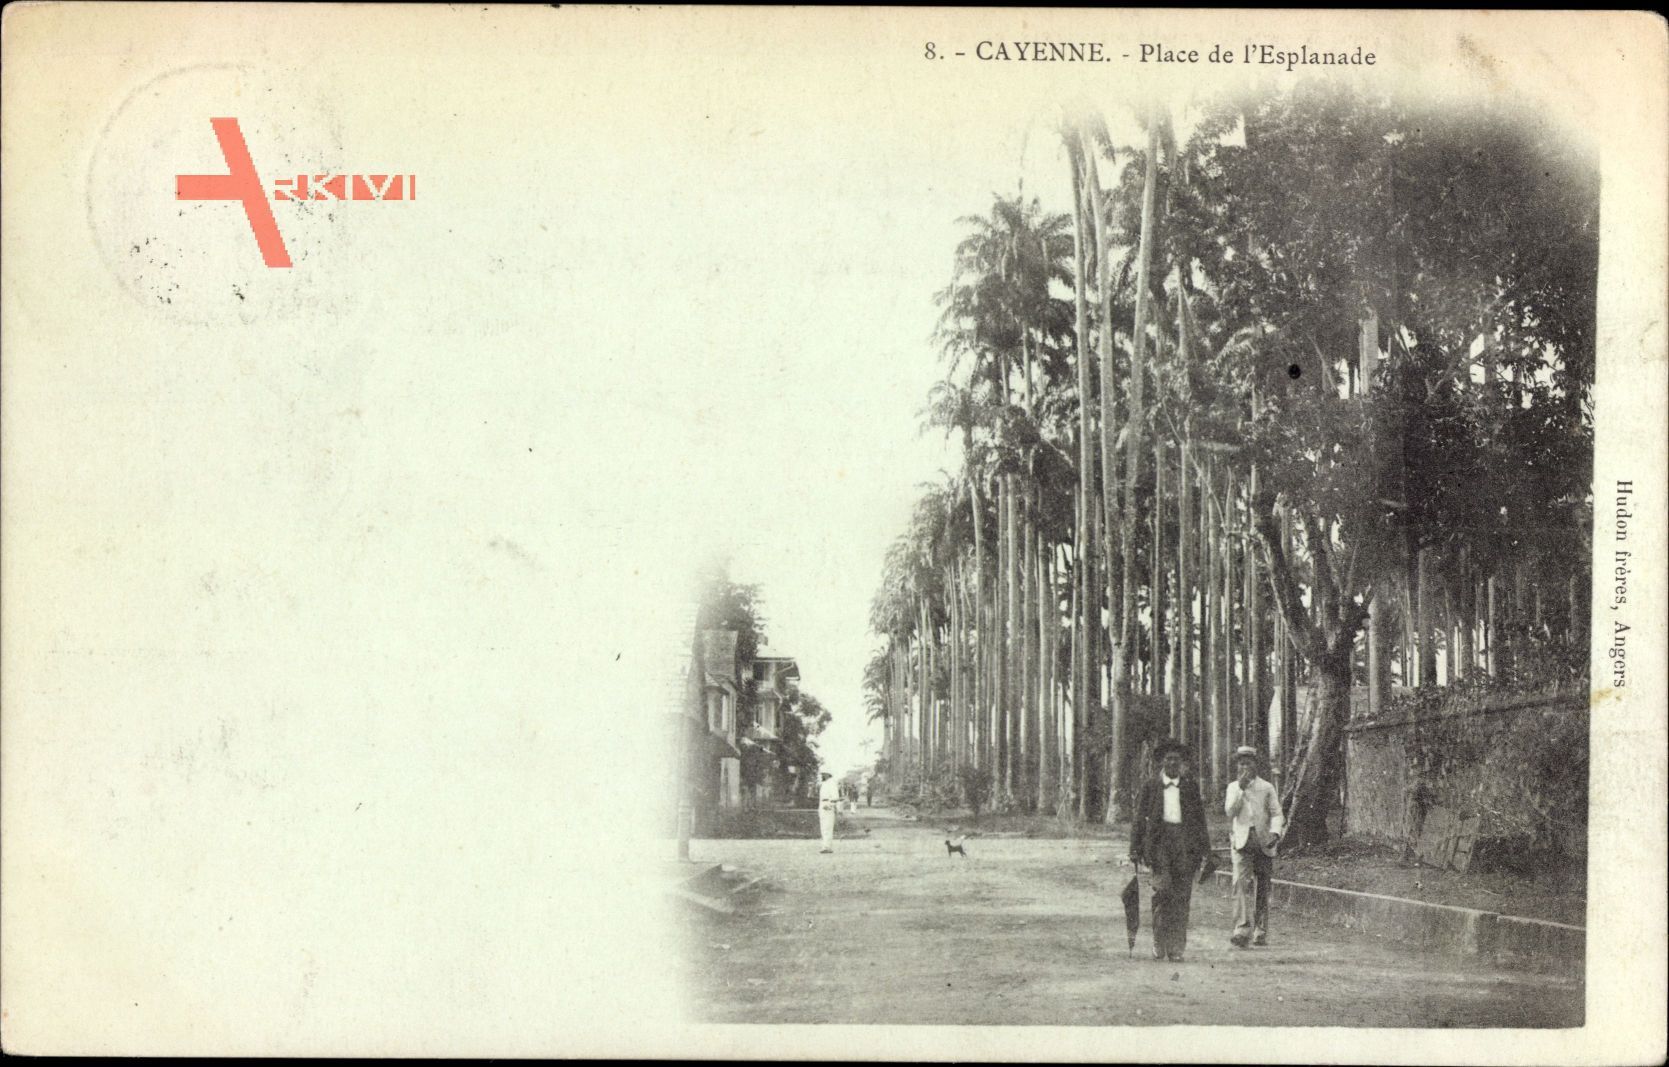 Cayenne Französisch Guayana, Place de l'Esplanade, Blick auf einen Platz